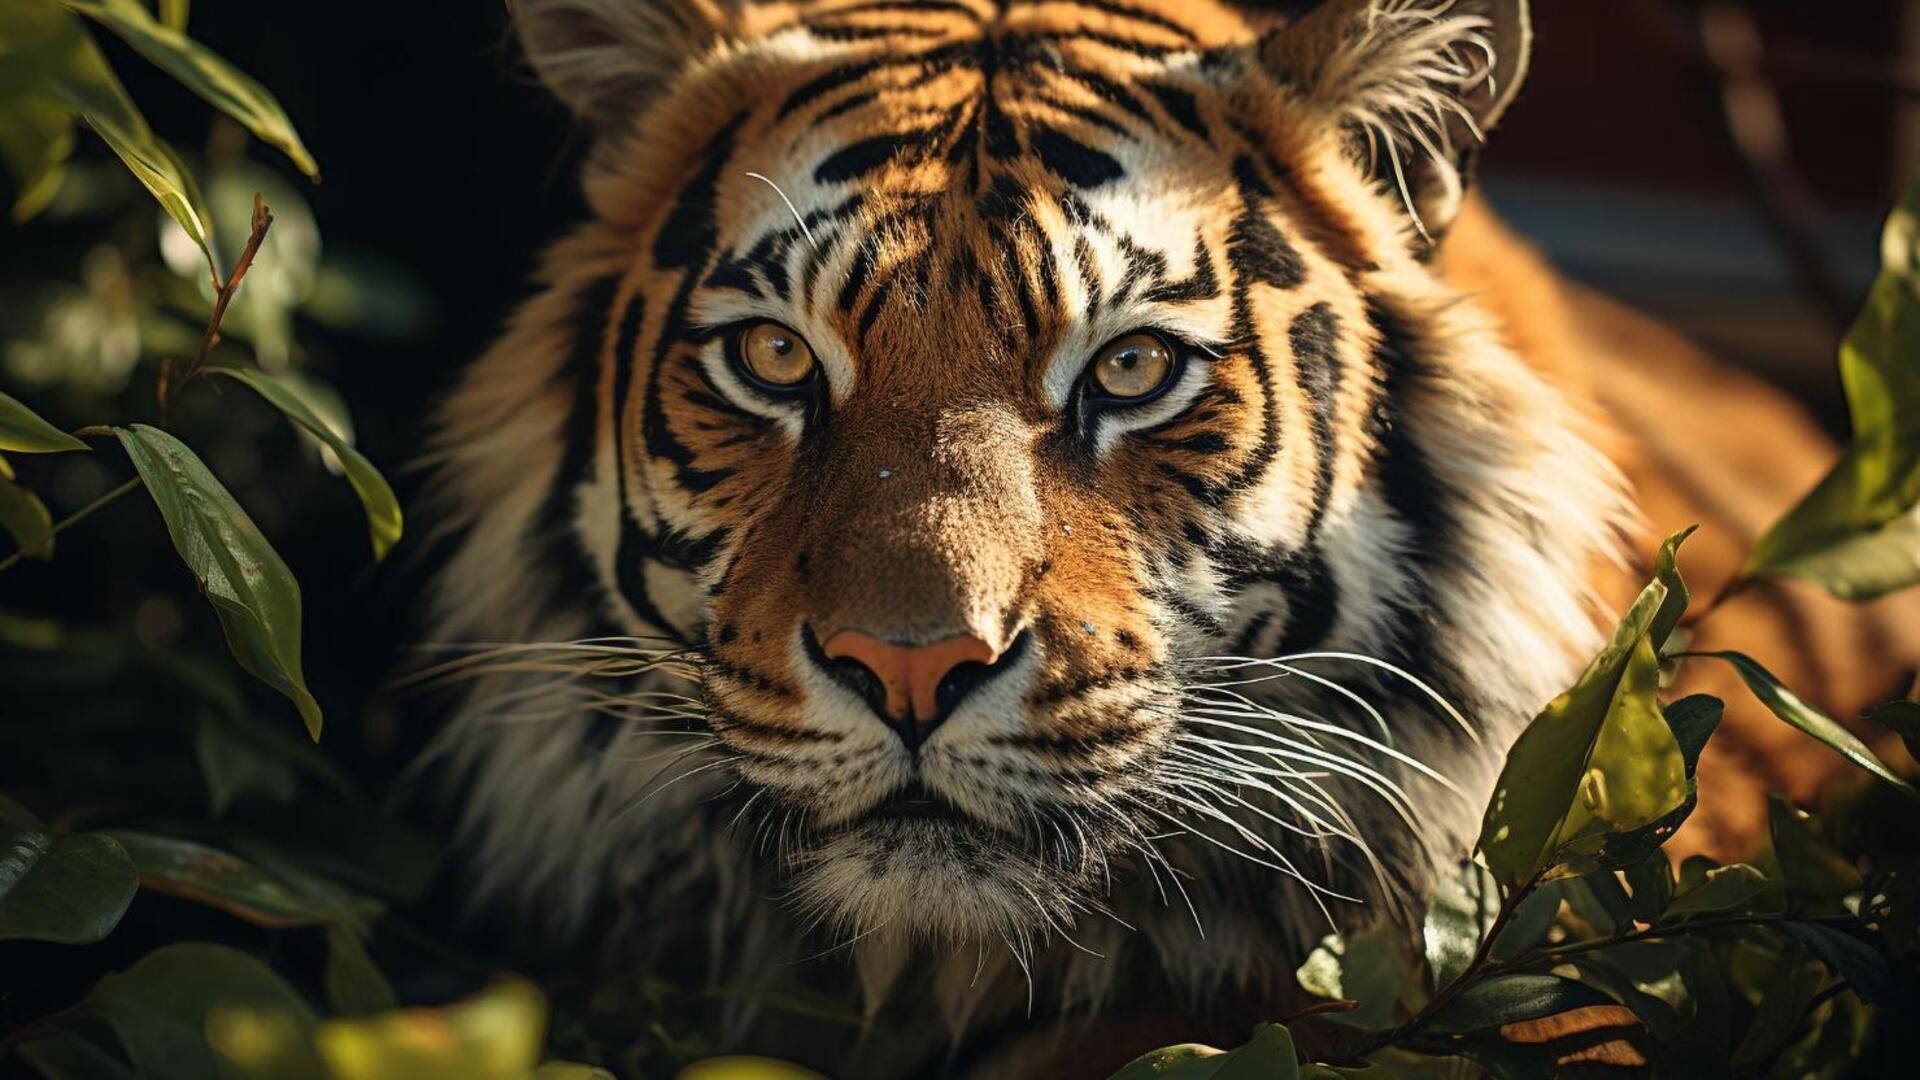 उत्तर प्रदेश: पीलीभीत में साफ-सफाई के लिए जंगल गए व्यक्ति को बाघ ने शिकार बनाया